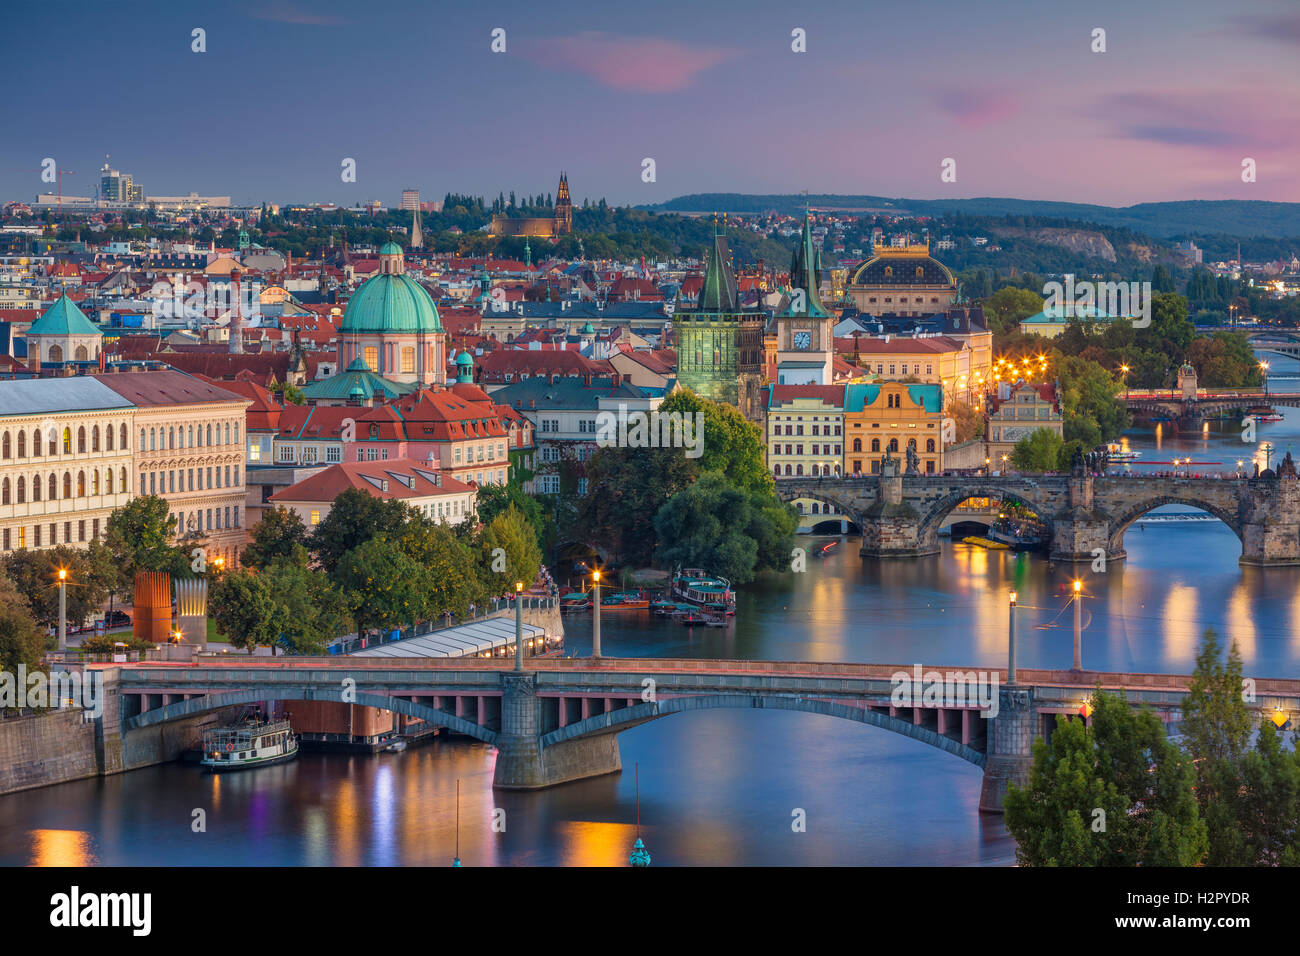 Tramonto di Praga. Immagine di Praga, capitale della Repubblica ceca e il Ponte di Carlo, durante il tramonto. Foto Stock